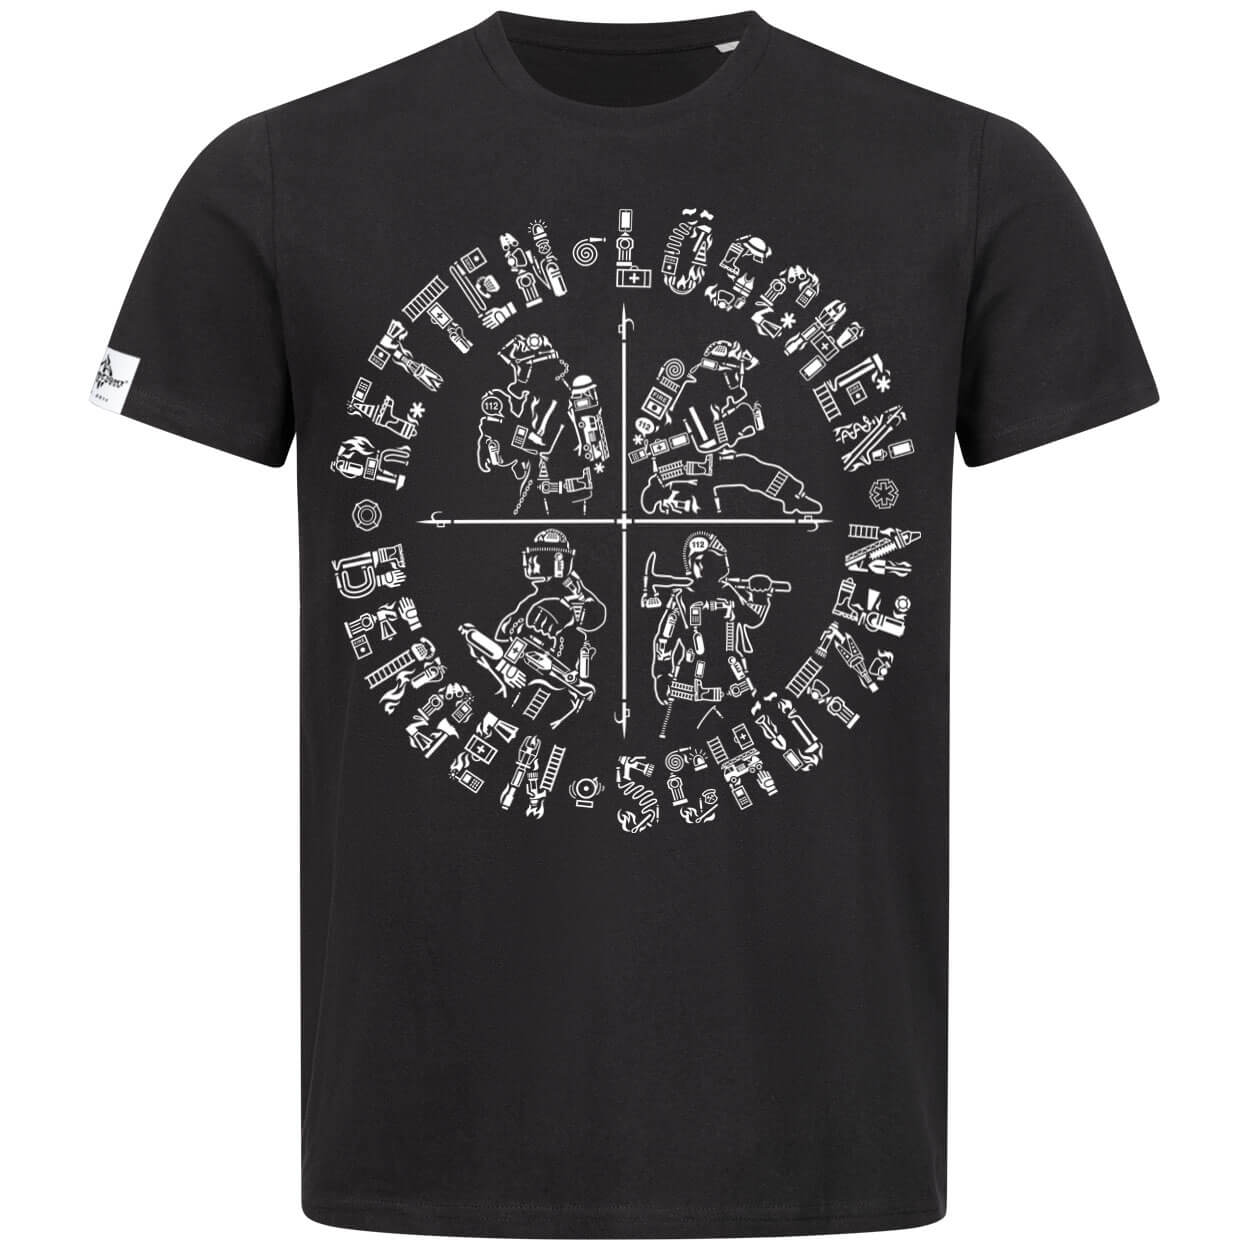 Retten Löschen Bergen Schützen - Männer T-Shirt Black